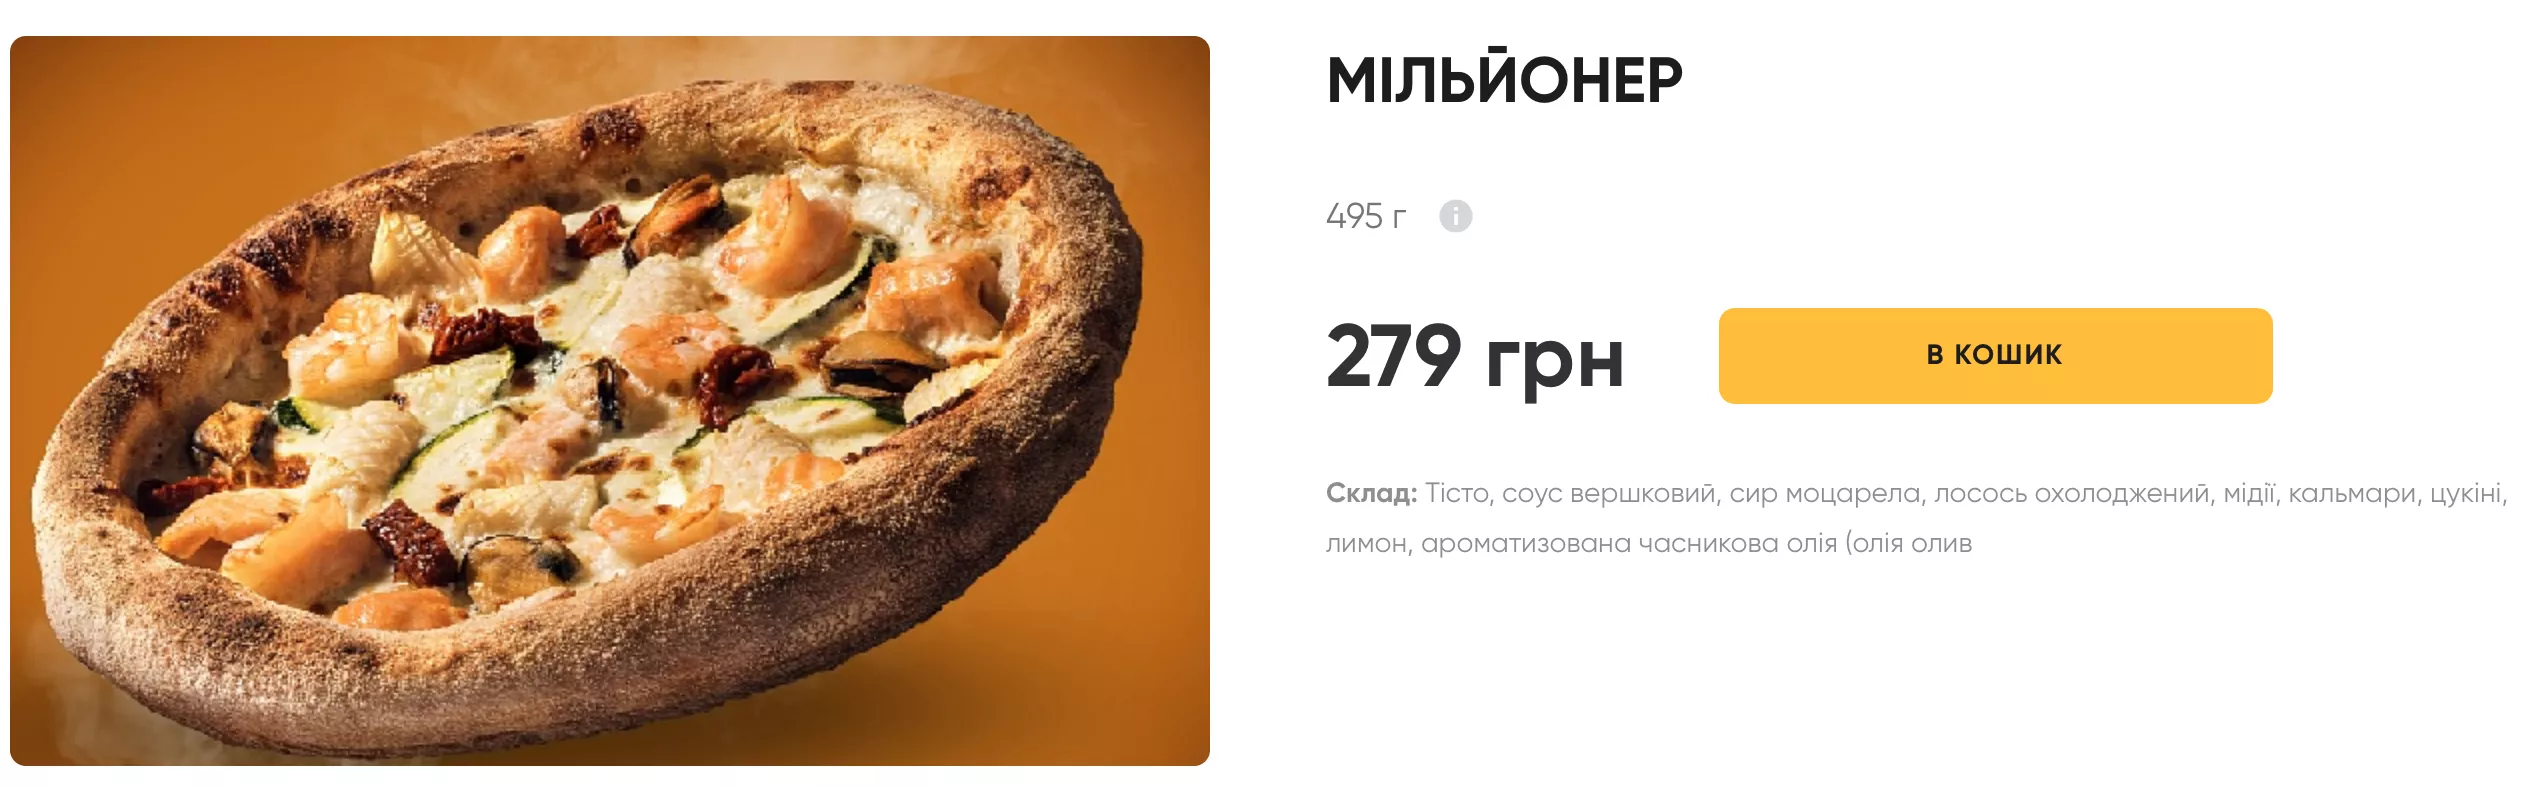 Піца "Мільйонер" за 279 гривень